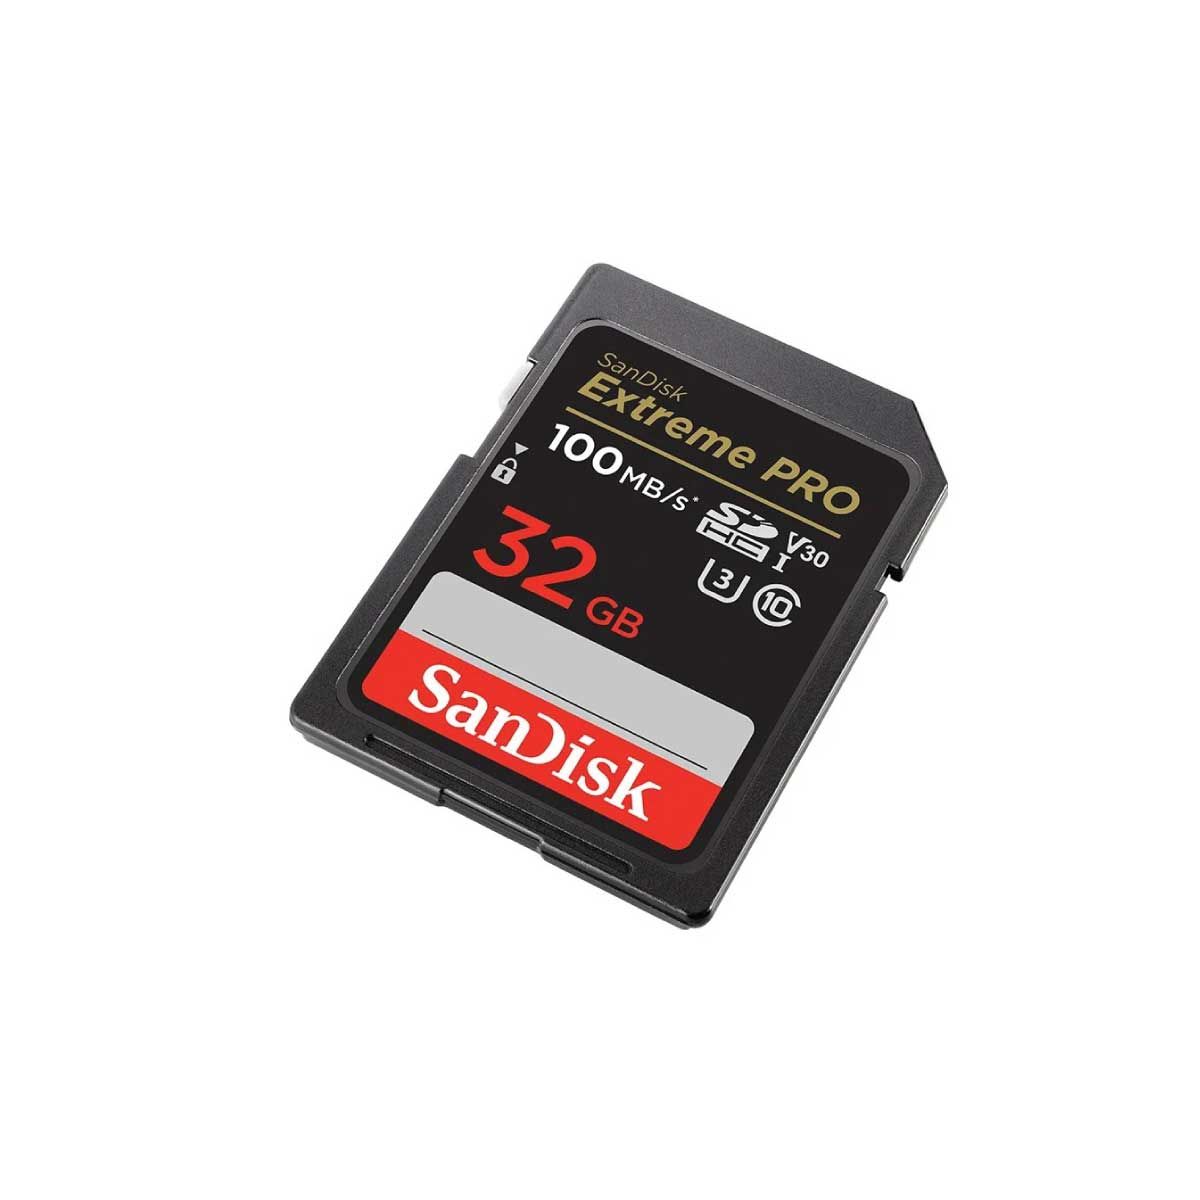 SANDISK SDCARD Extreme Pro 100MB รุ่น SDSDXXO032G (SDSDXXO-032G-GN4IN)